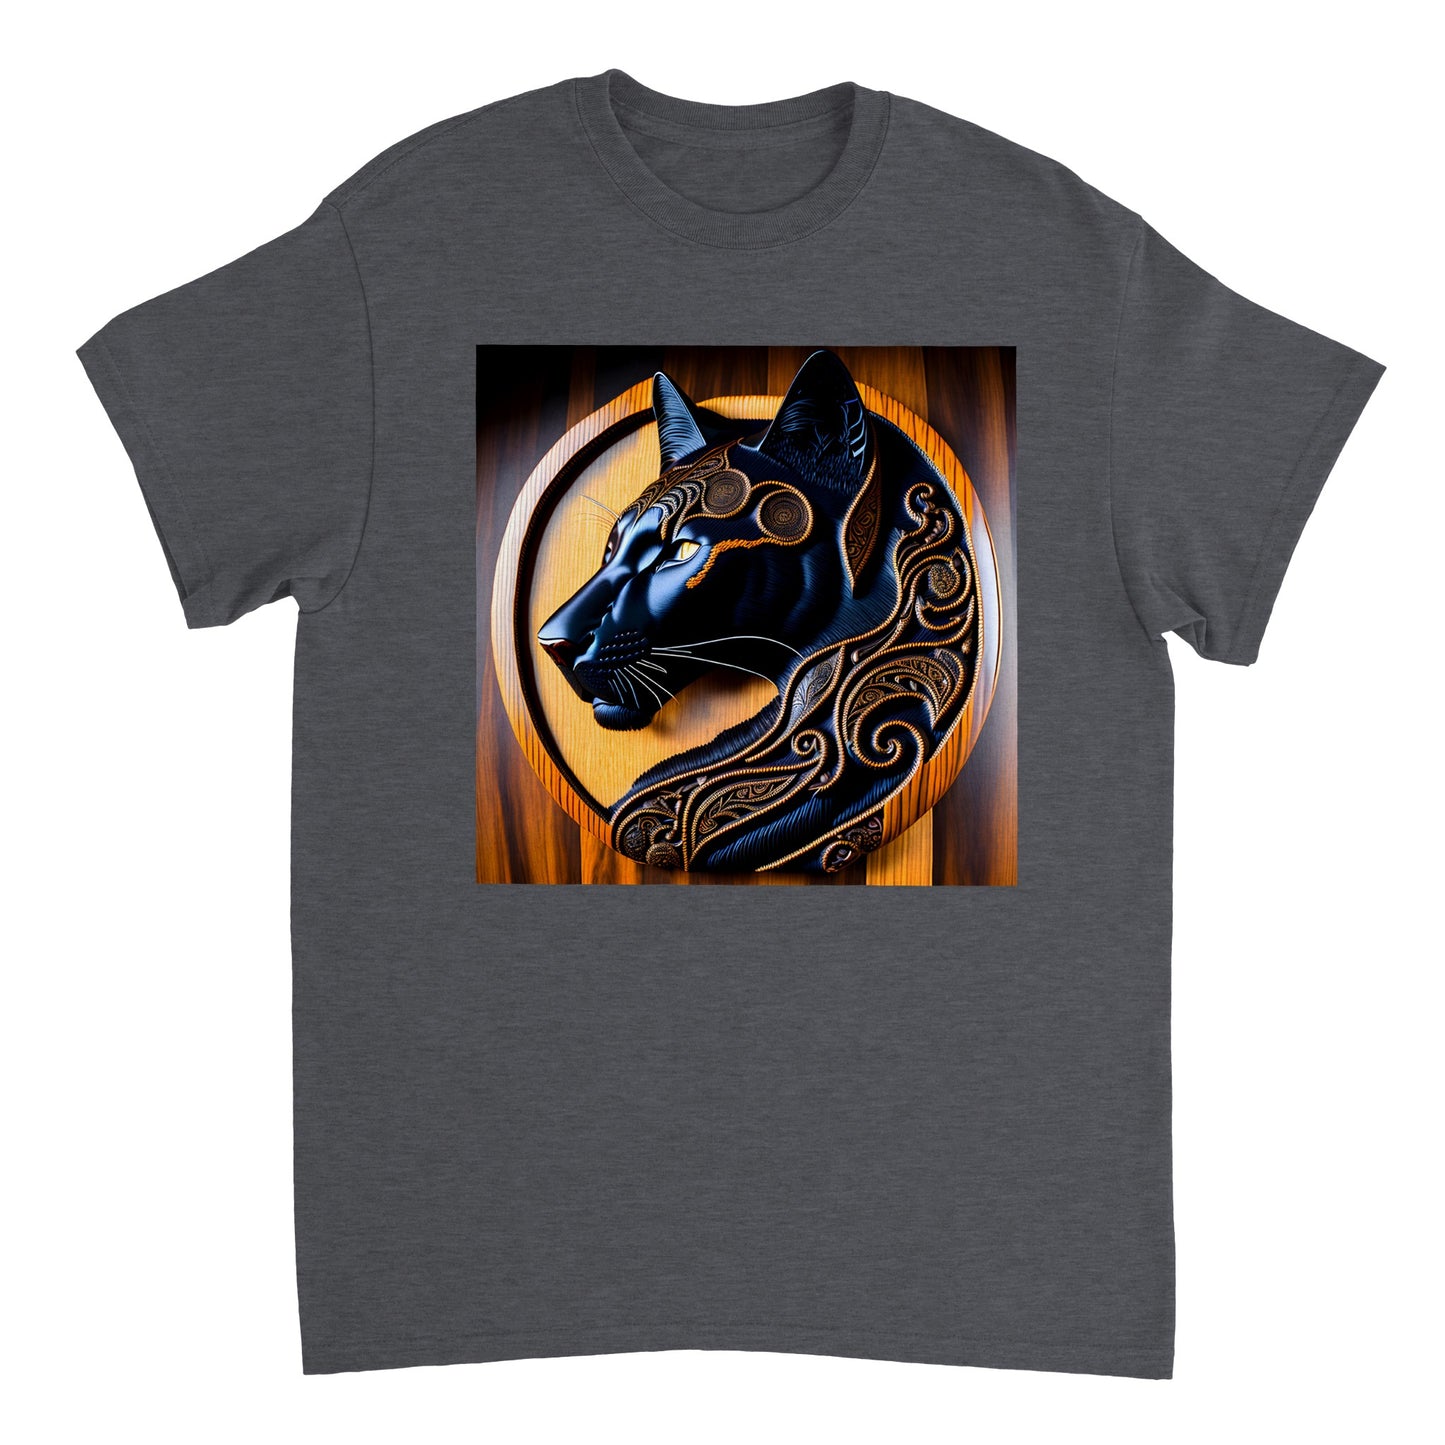 3D Wooden Animal Art - Heavyweight Unisex Crewneck T-shirt 81